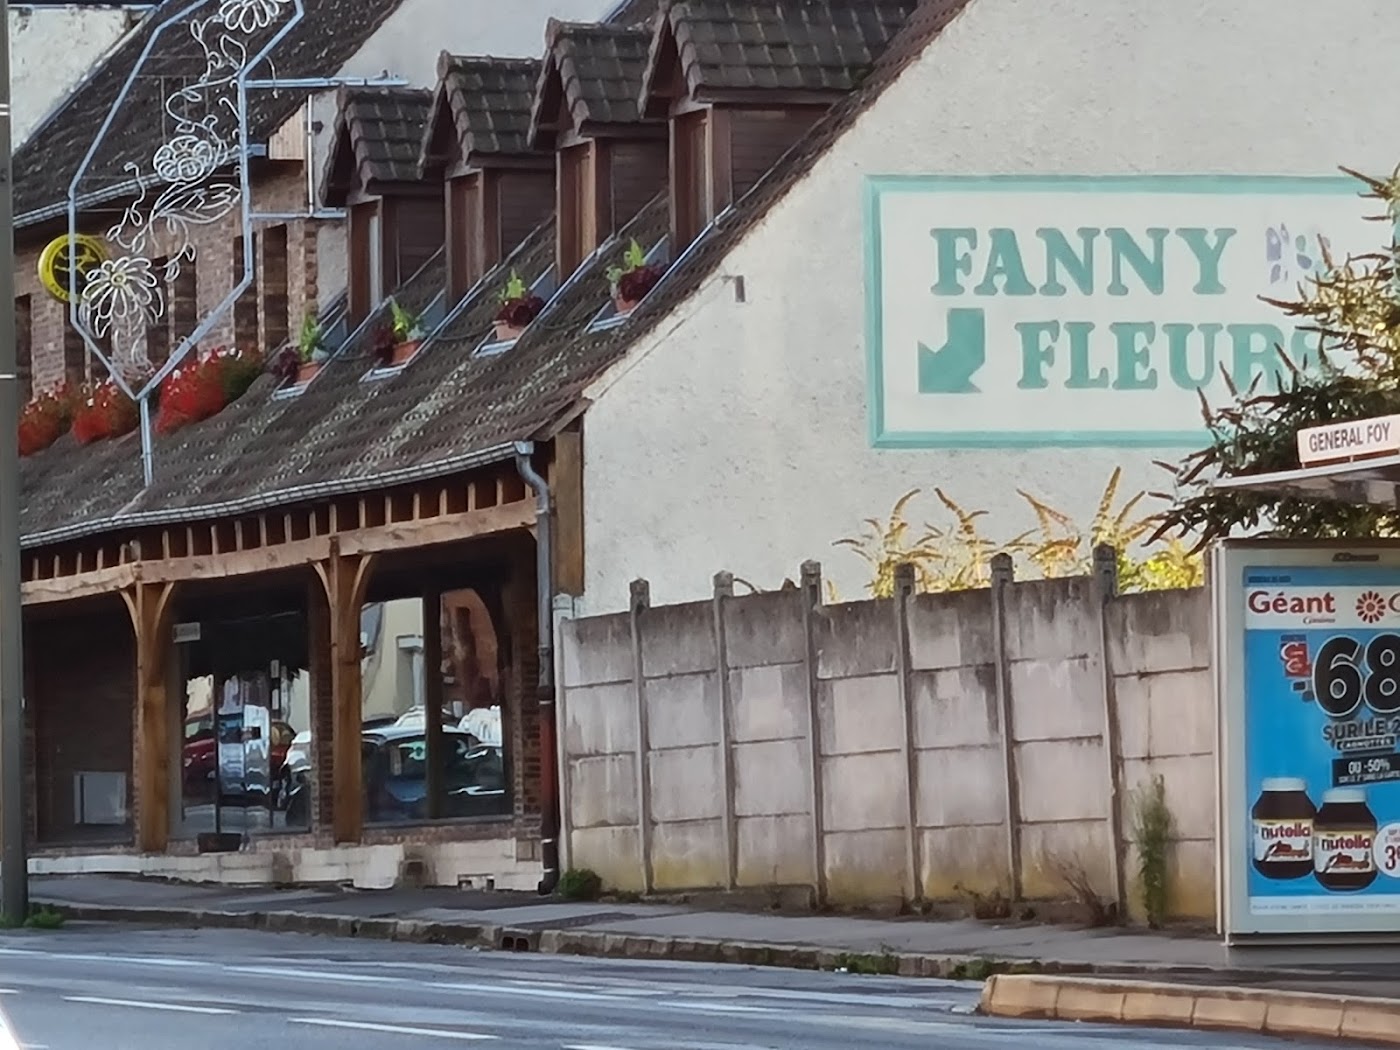 Fanny Fleurs